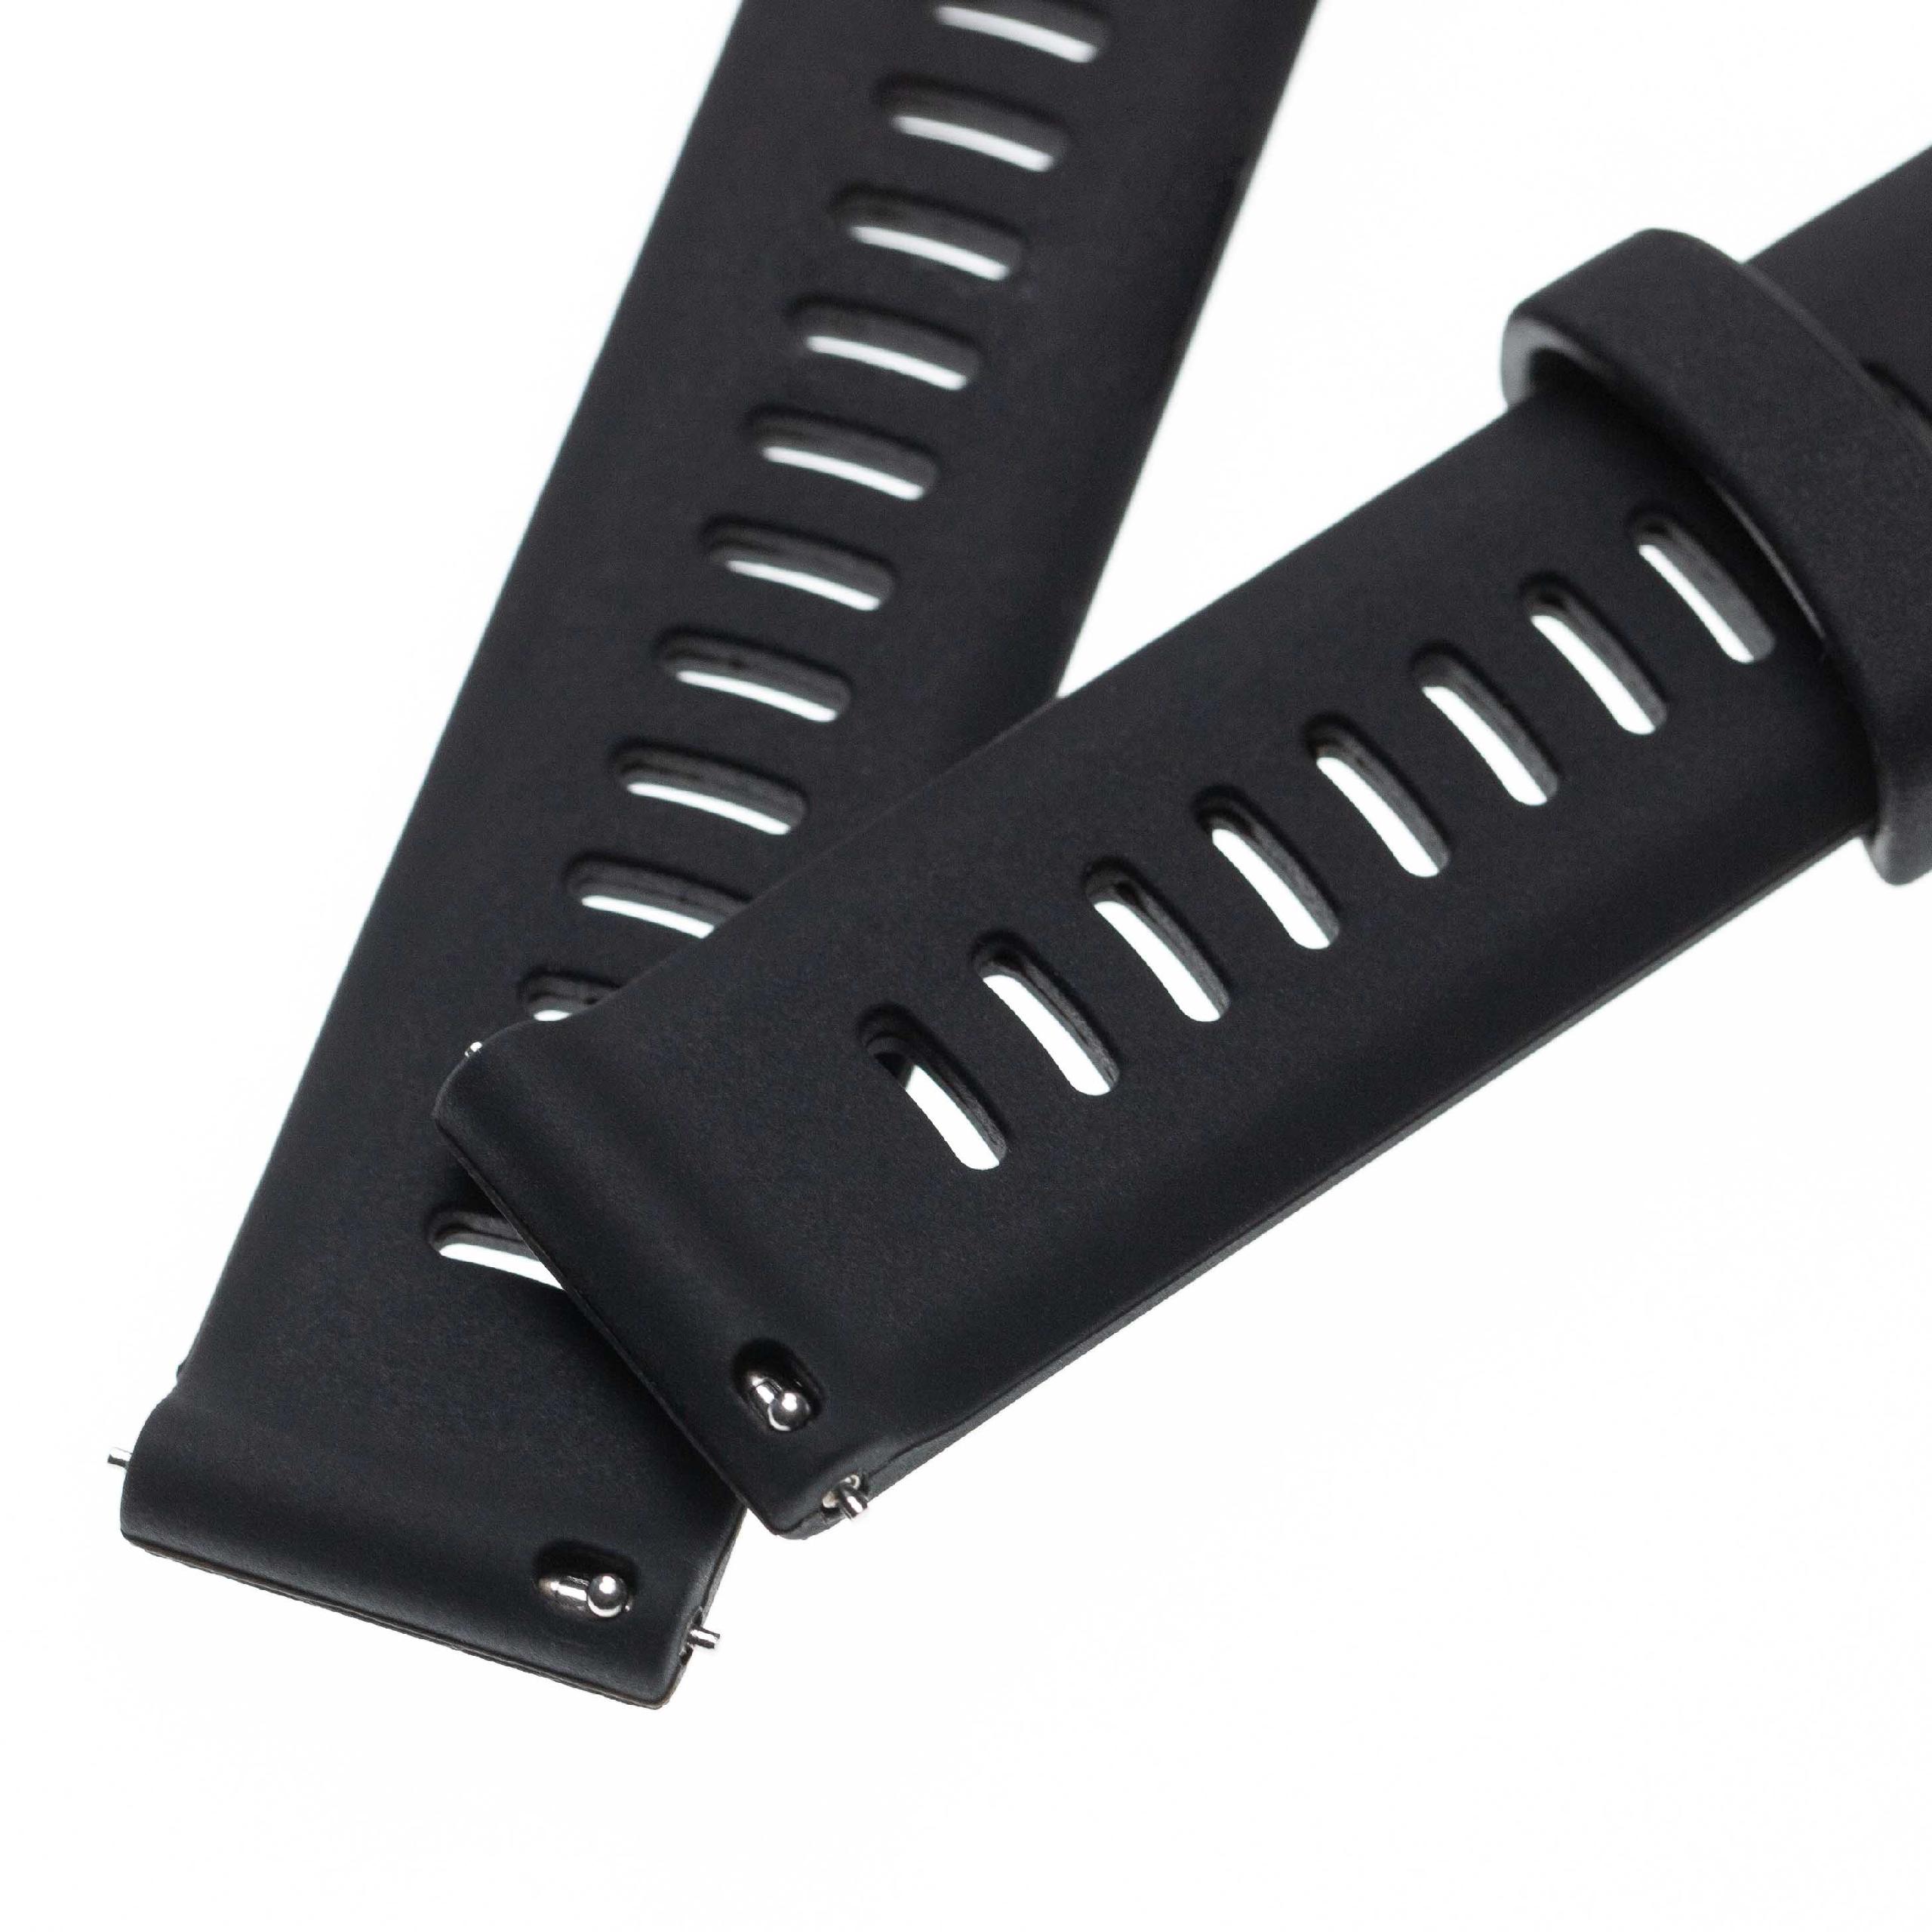 Bracelet pour montre intelligente Garmin Forerunner - 11 + 8,5 cm de long, silicone, noir